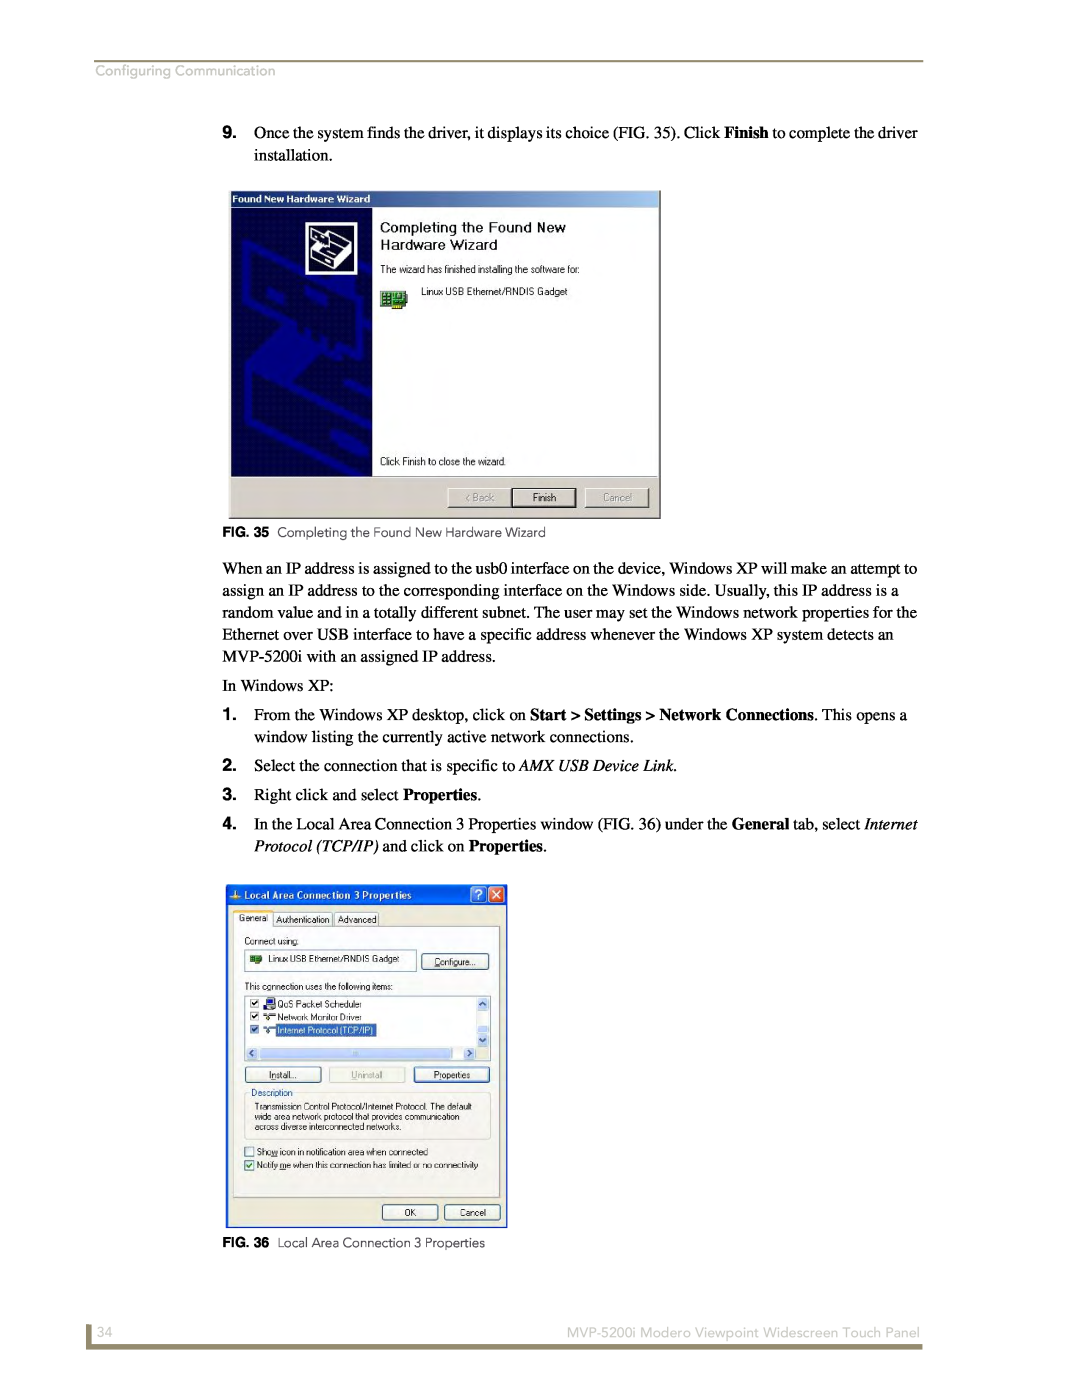 AMX MVP-5200i manual In Windows XP 